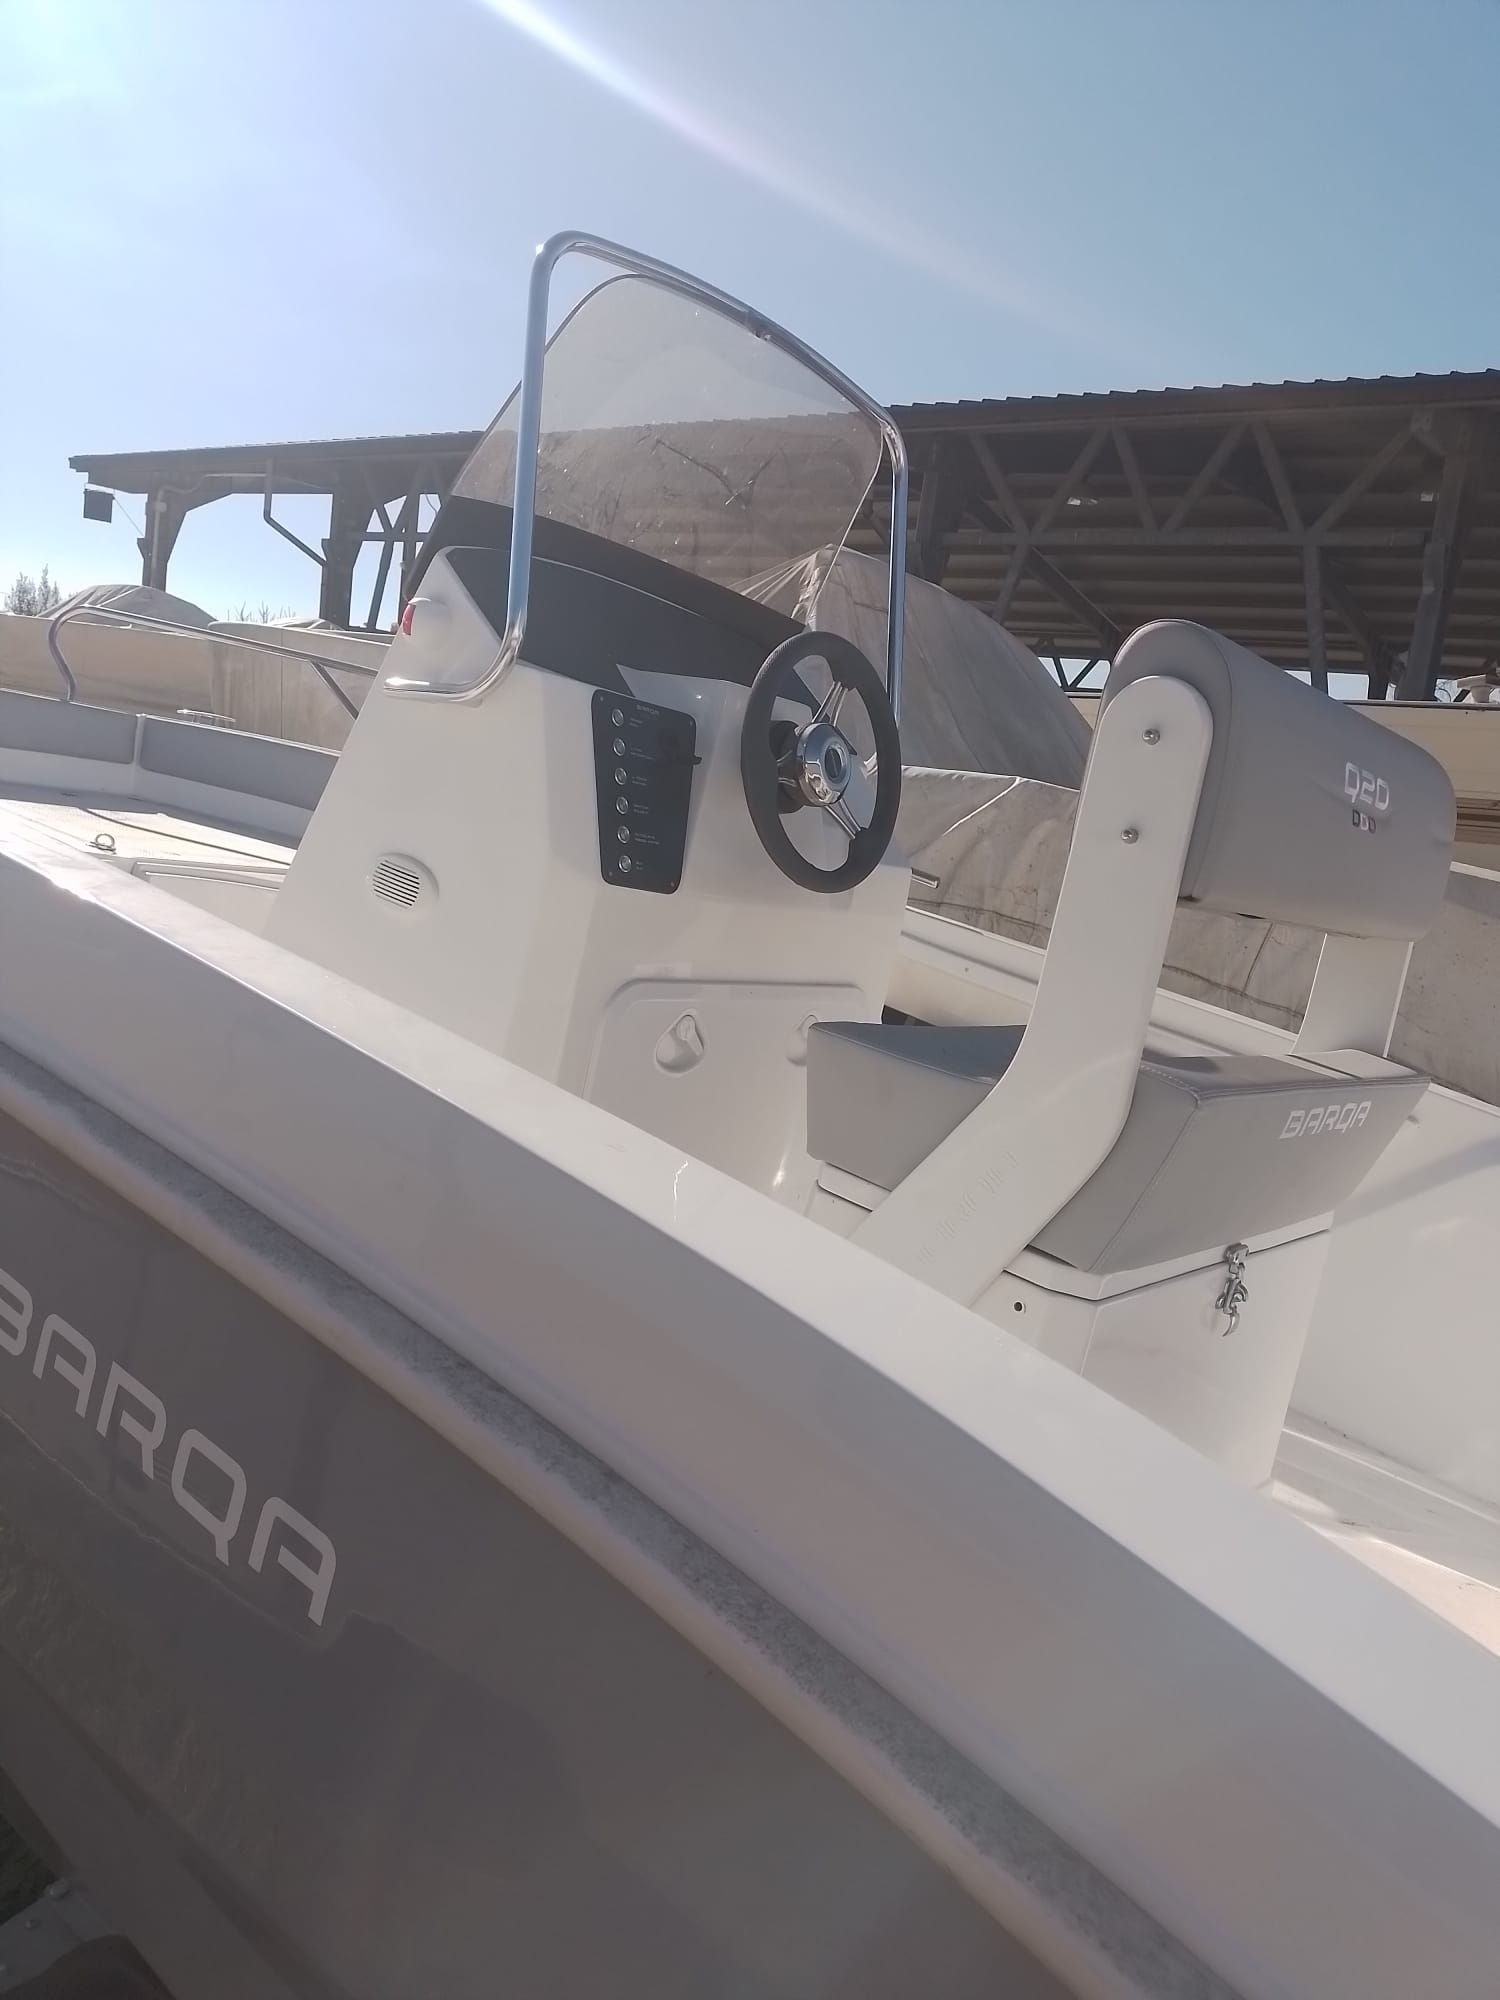 Deck Boat - Barqa Q20